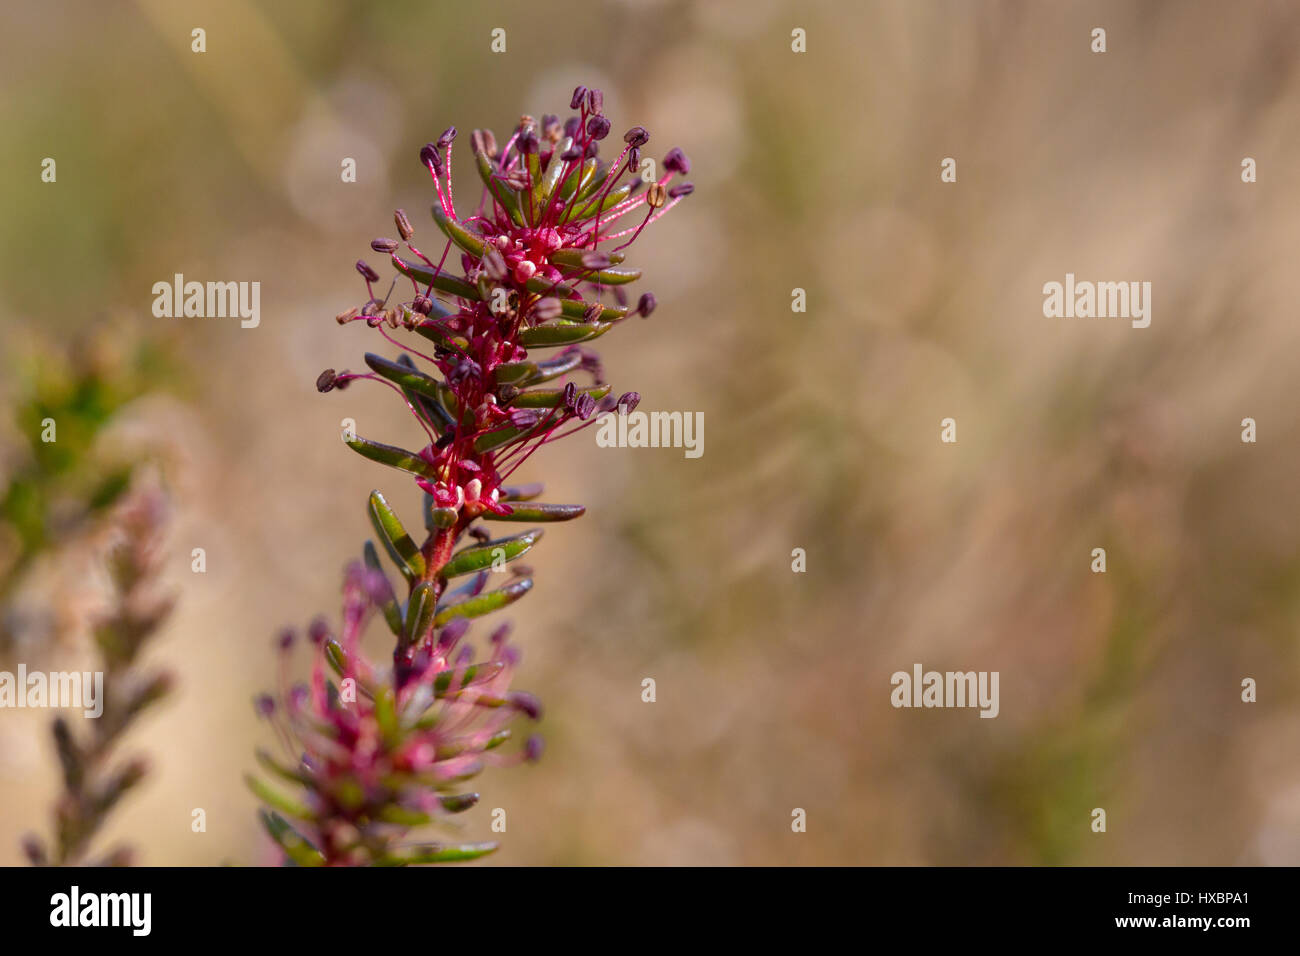 Close-up of flowering crowberry (Empetrum nigrum) Stock Photo